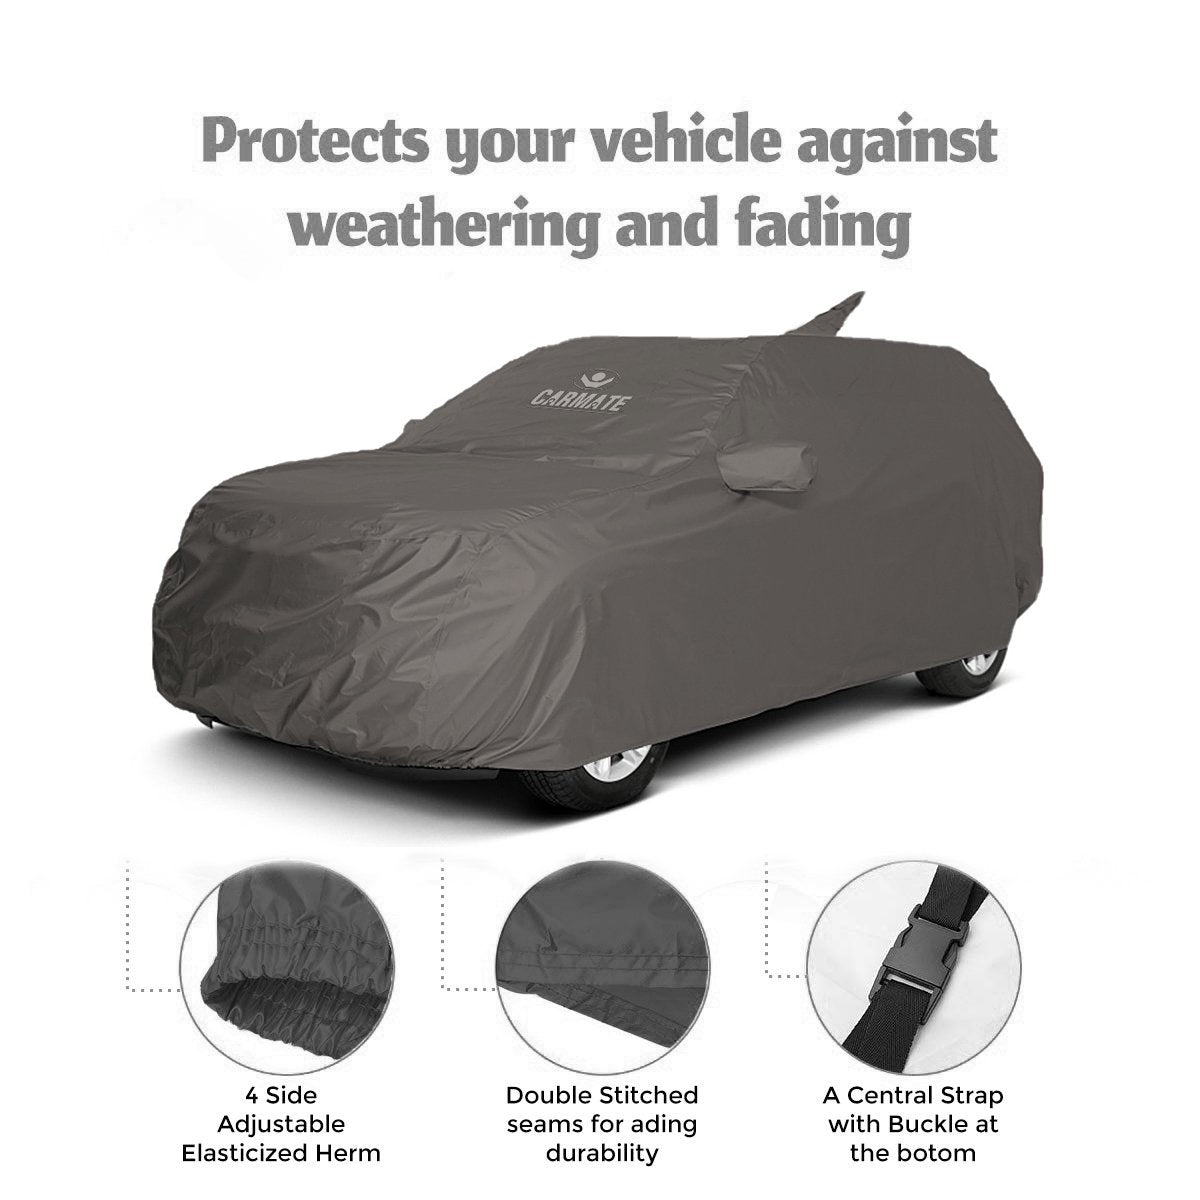 Carmate Car Body Cover 100% Waterproof Pride (Grey) for Volkswagon - Passat - CARMATE®